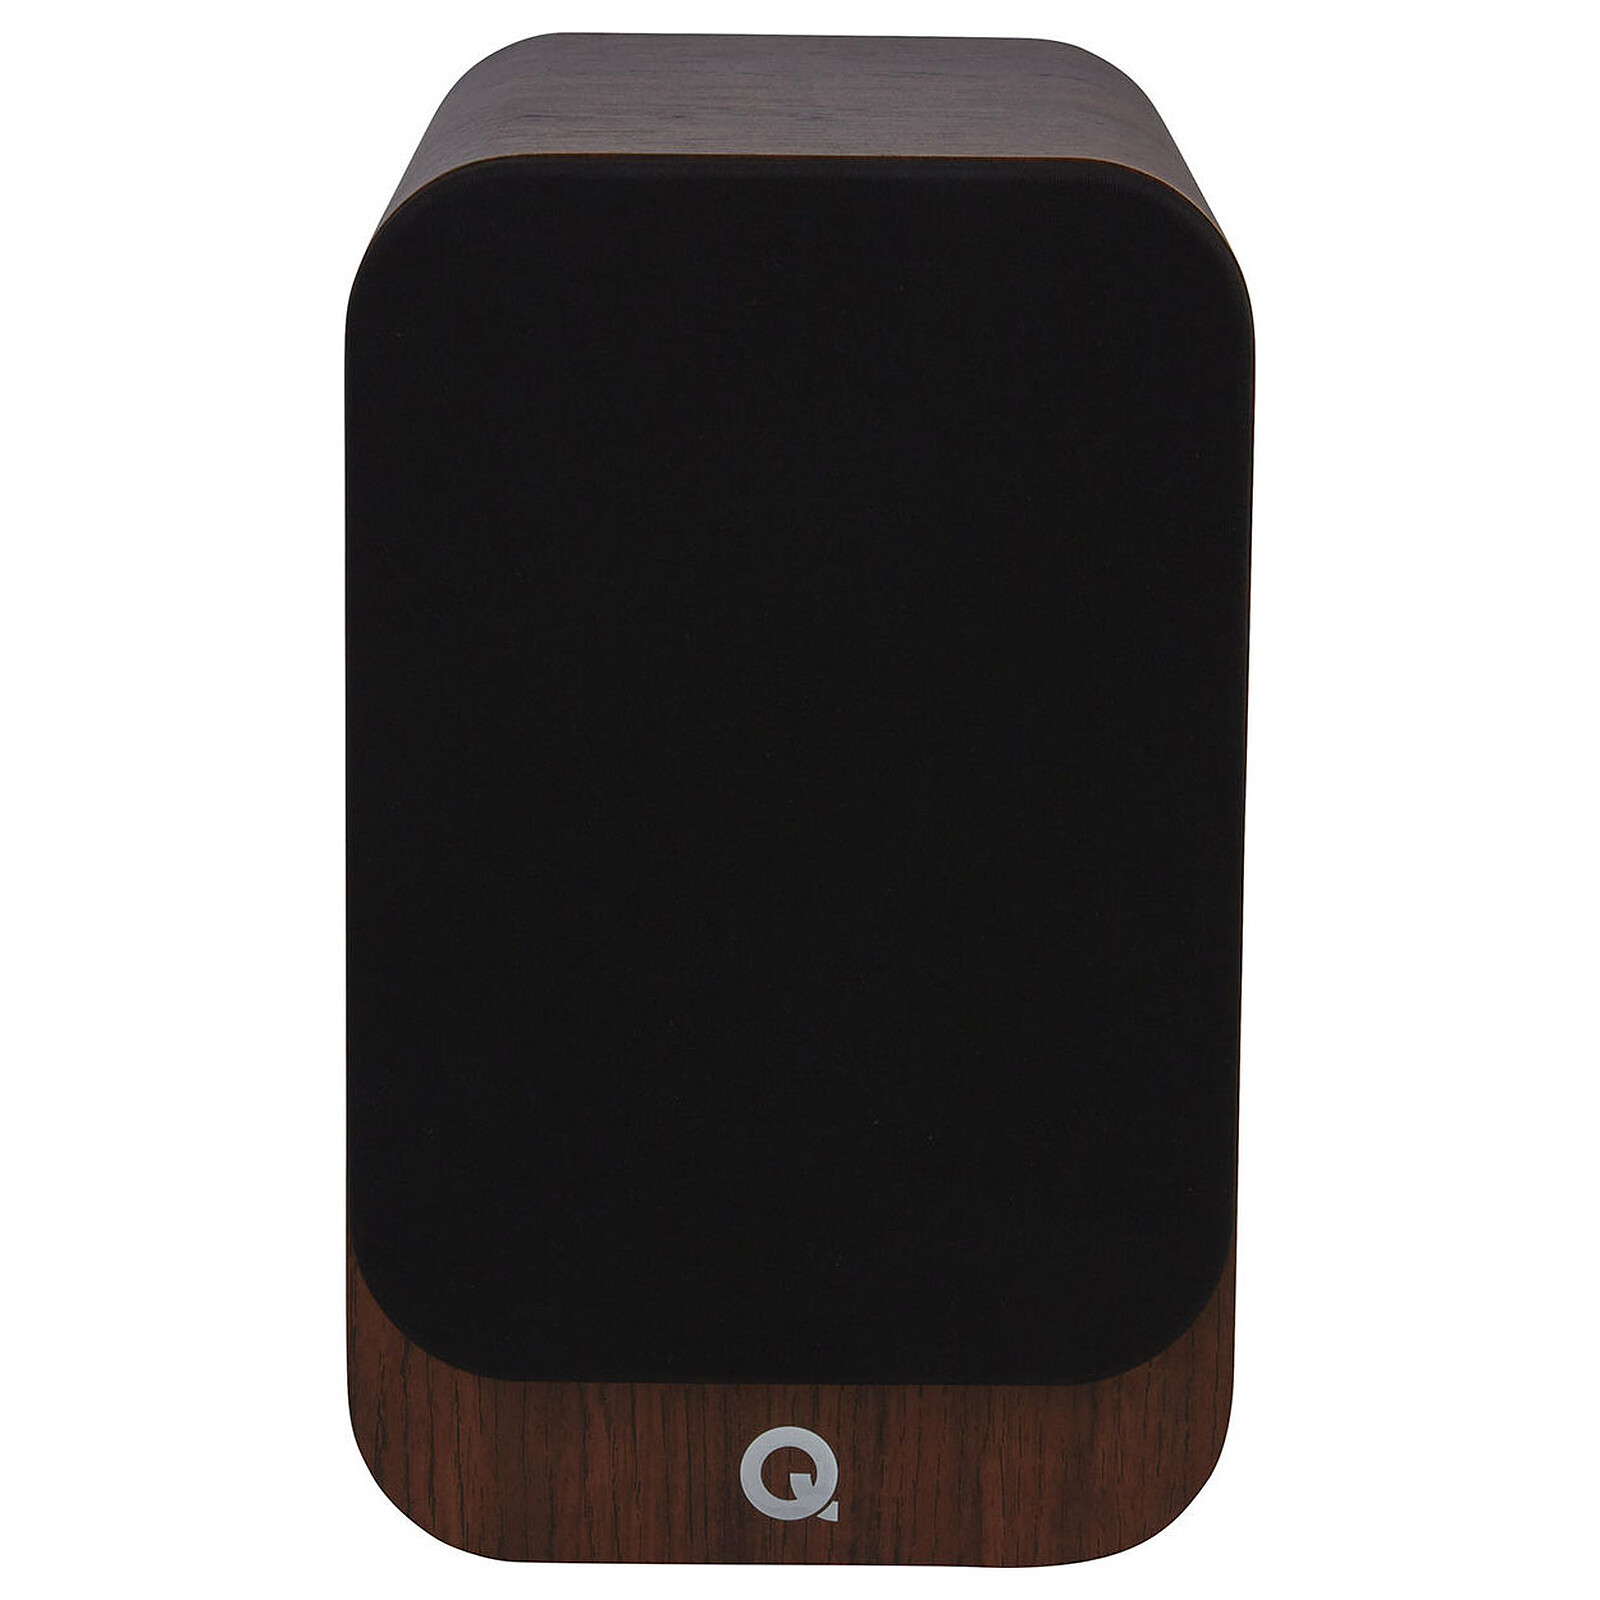 Review: Q Acoustics 3020i